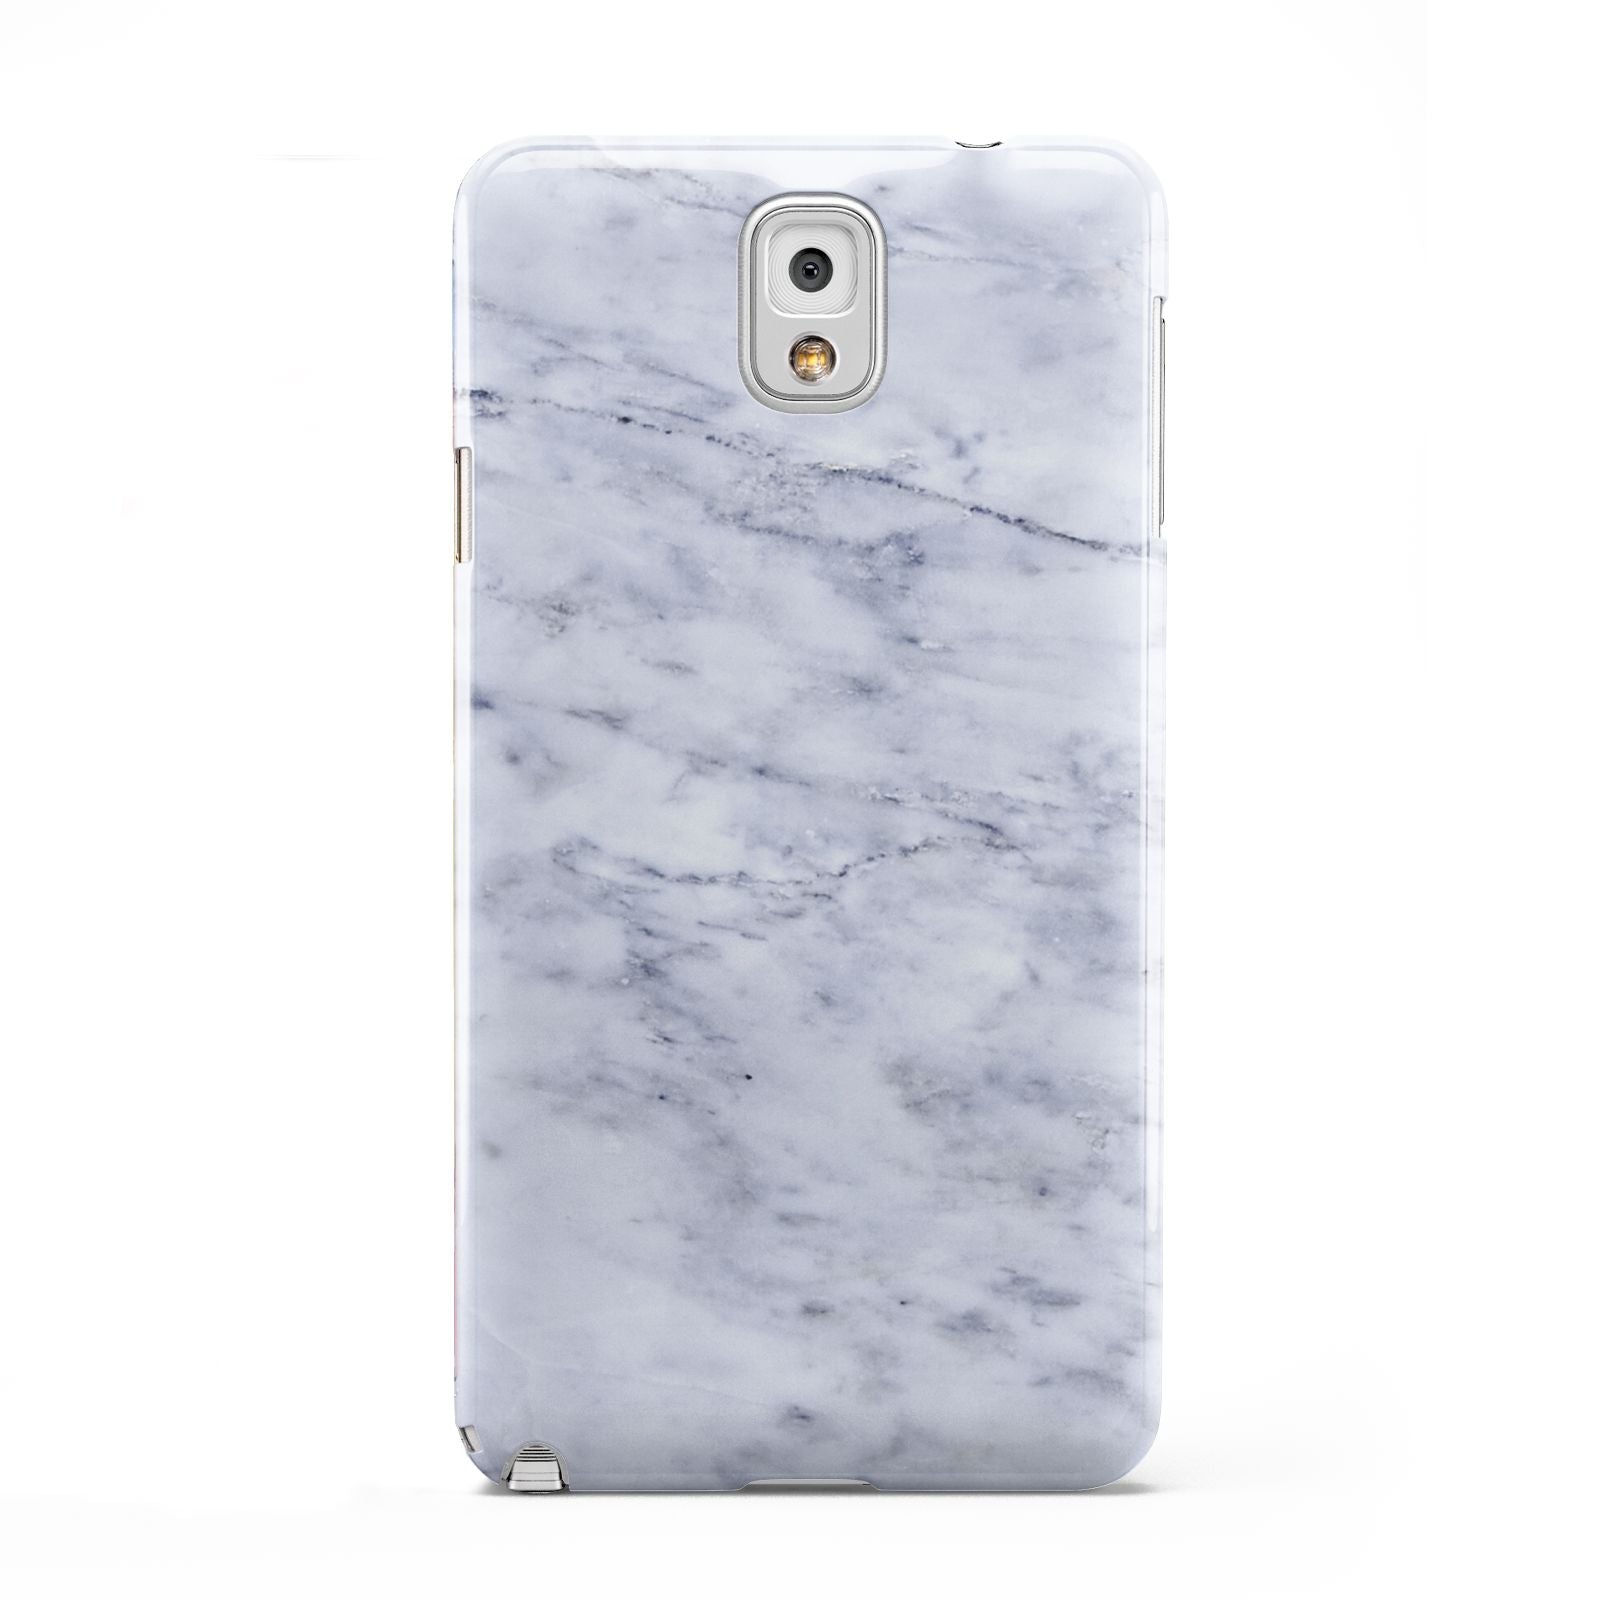 Faux Carrara Marble Print Samsung Galaxy Note 3 Case